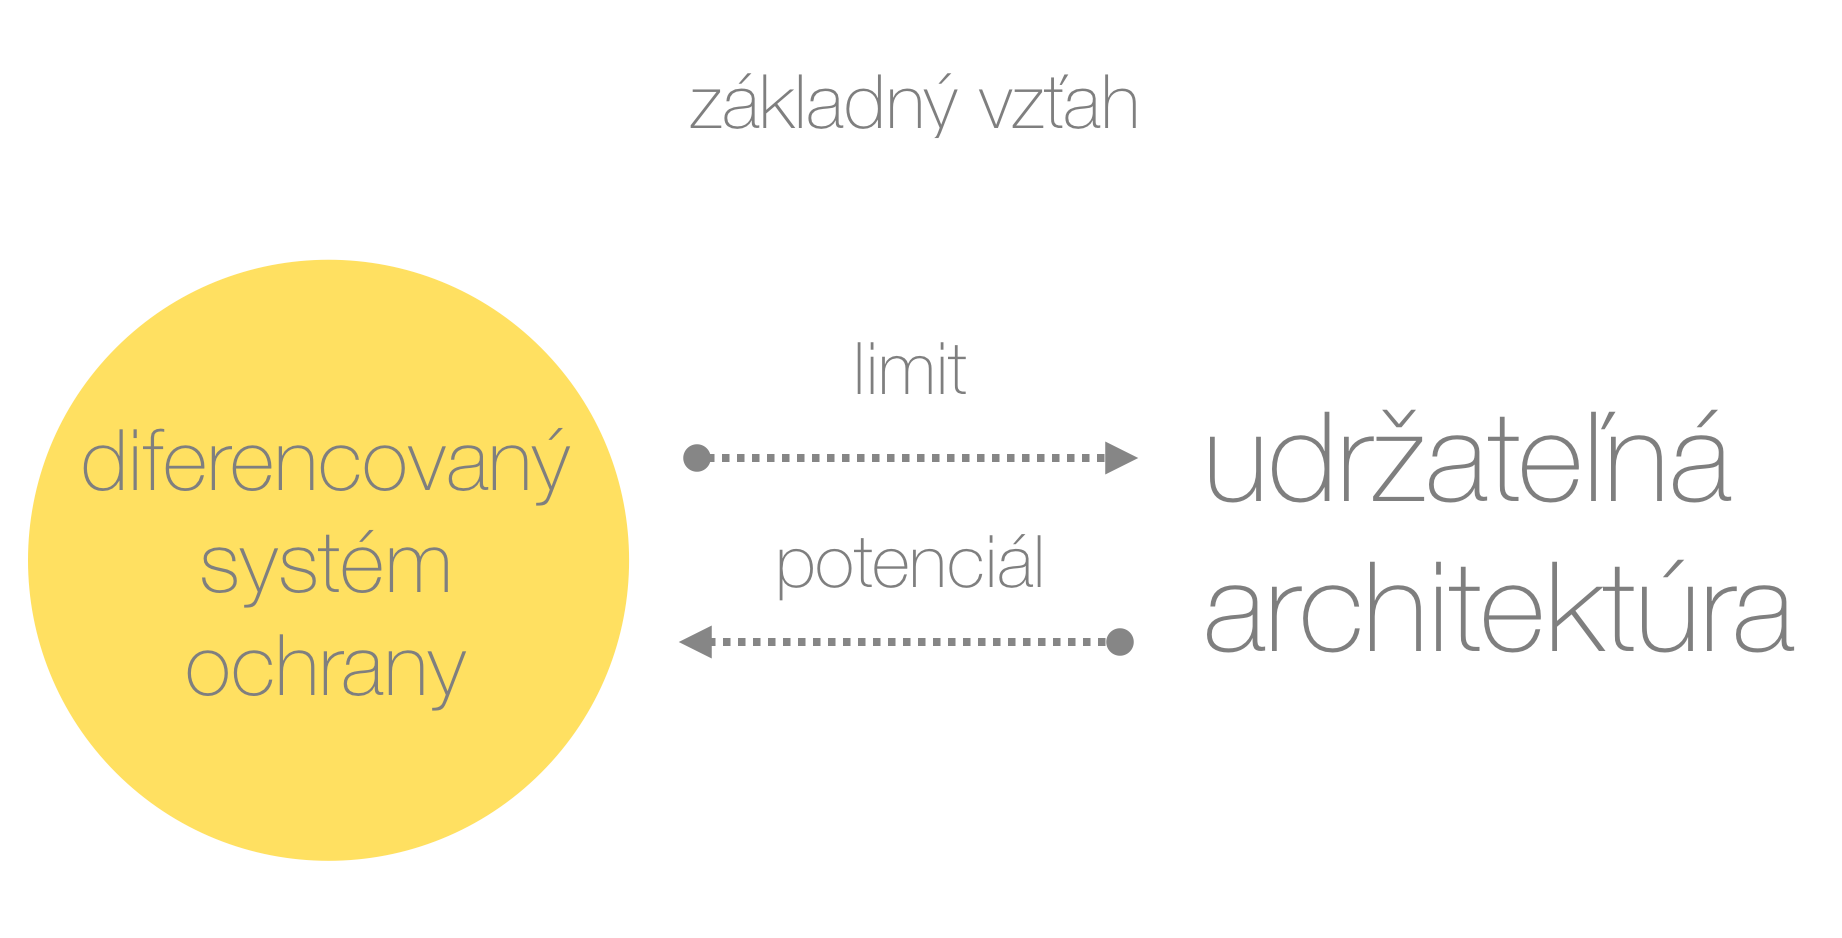  Schéma podčiarkuje fakt, že diferencovaný systém ochrany pamiatok na Slovensku je hlavným nástrojom pamiatkovej starostlivosti a bude konfrontovaný s princípmi udržateľnej architektúry. Žltý kruh zobrazuje dominantný postoj systému voči novým zásahom. 